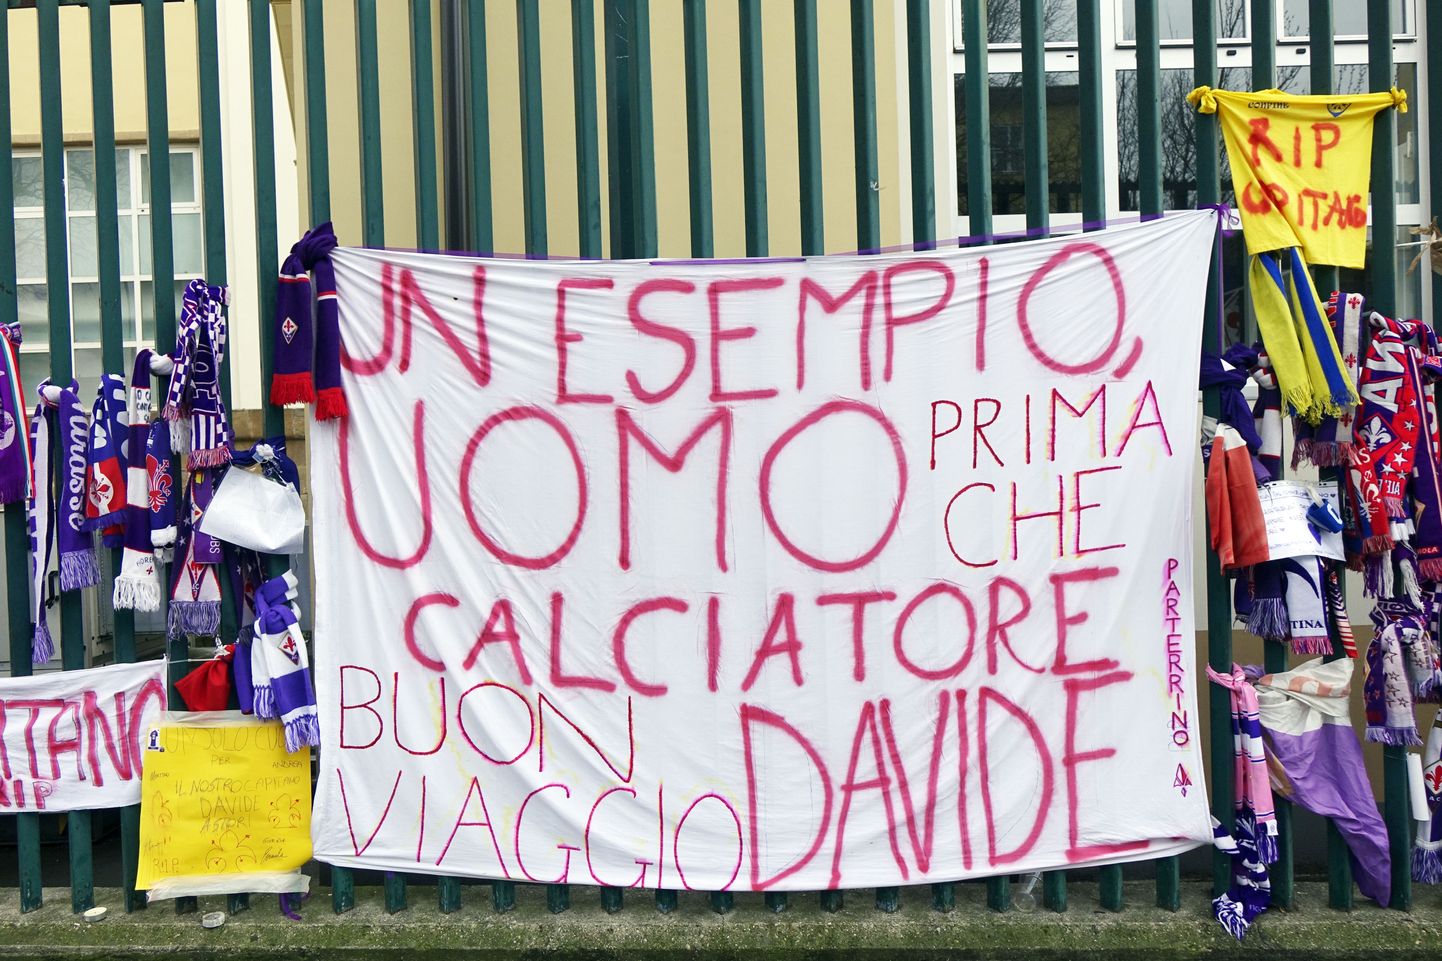 Фанаты "Фиорентины" выражают скорбь по поводу кончину капитана команды, Давиде Астори, на базе клуба во Флоренции